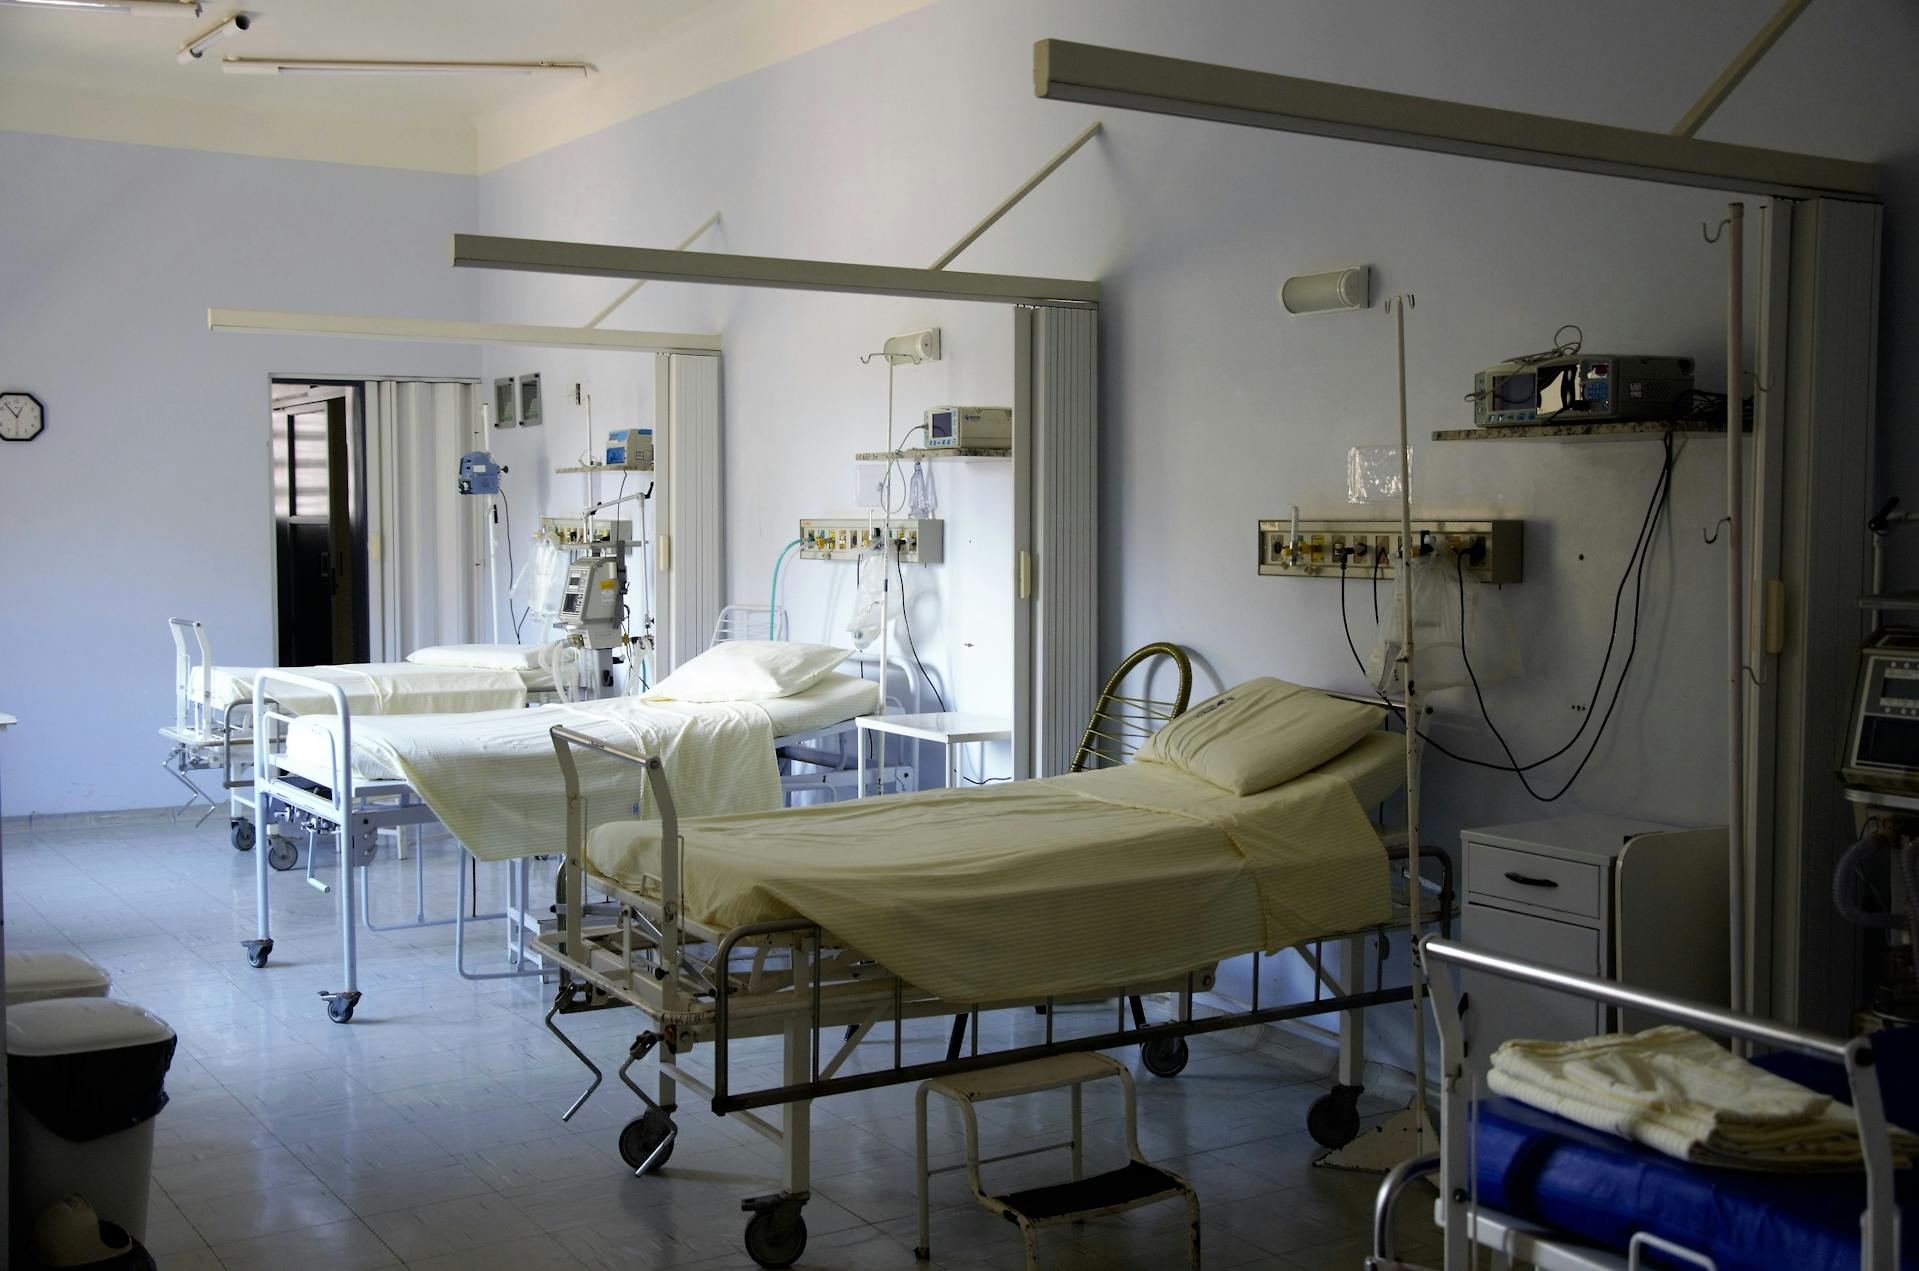 Une rangée de lits d'hôpitaux | Source : Pexels